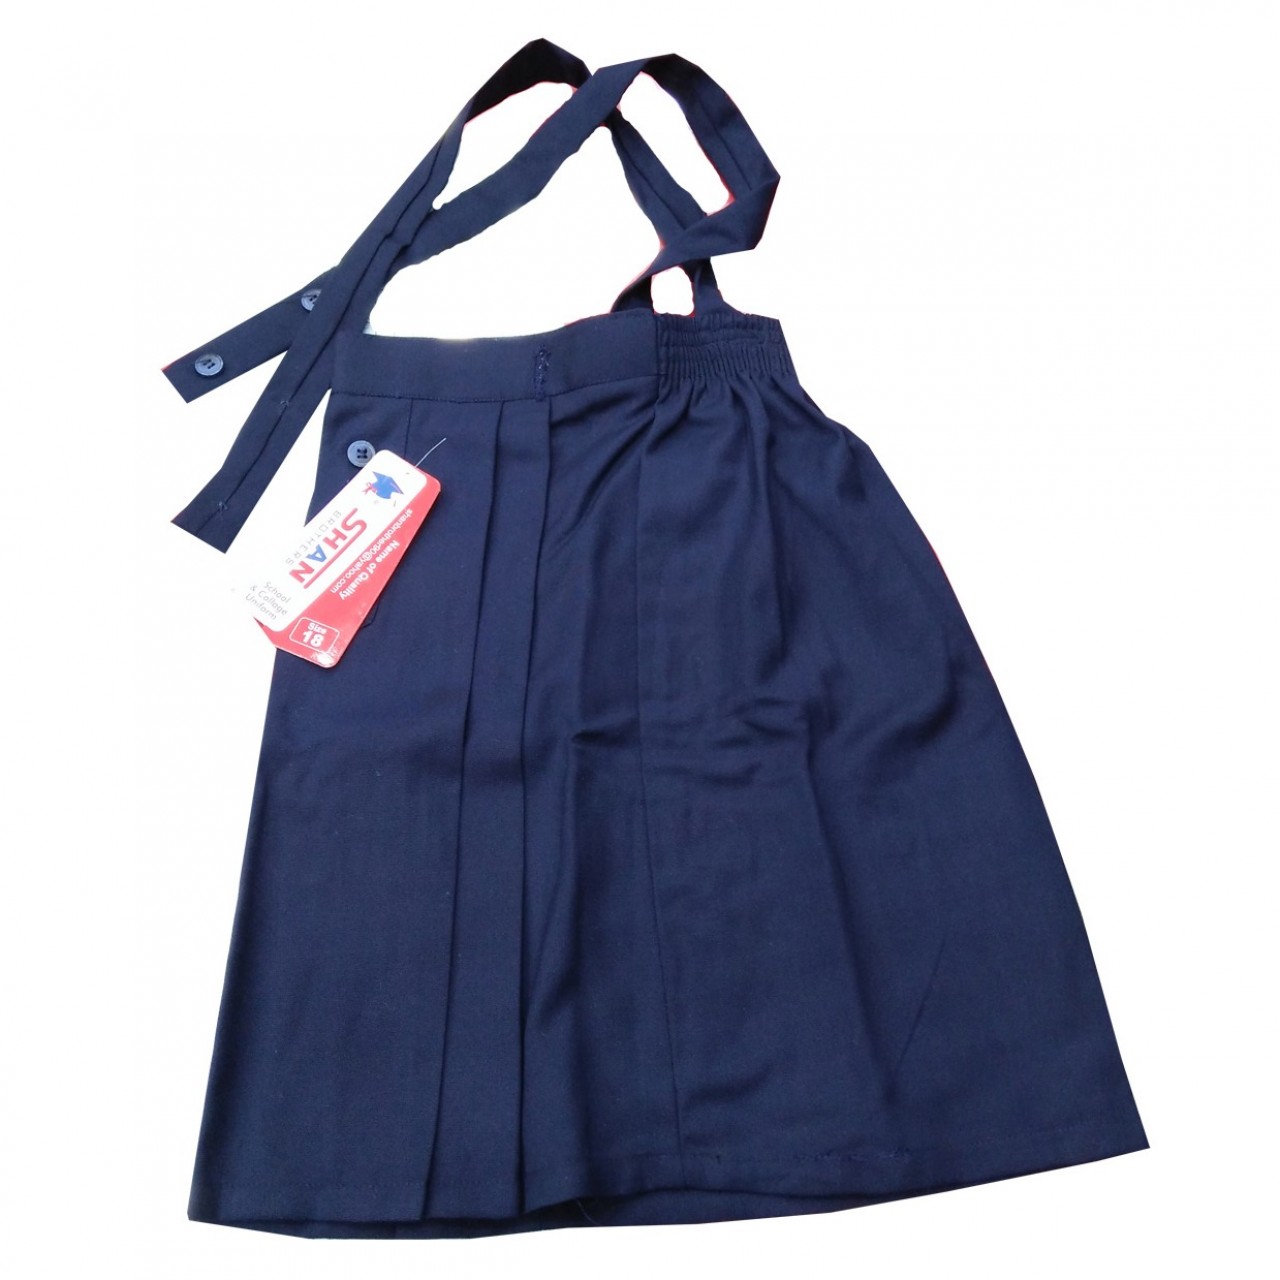 The Spirit School Uniform Skirt For Girls- Blue